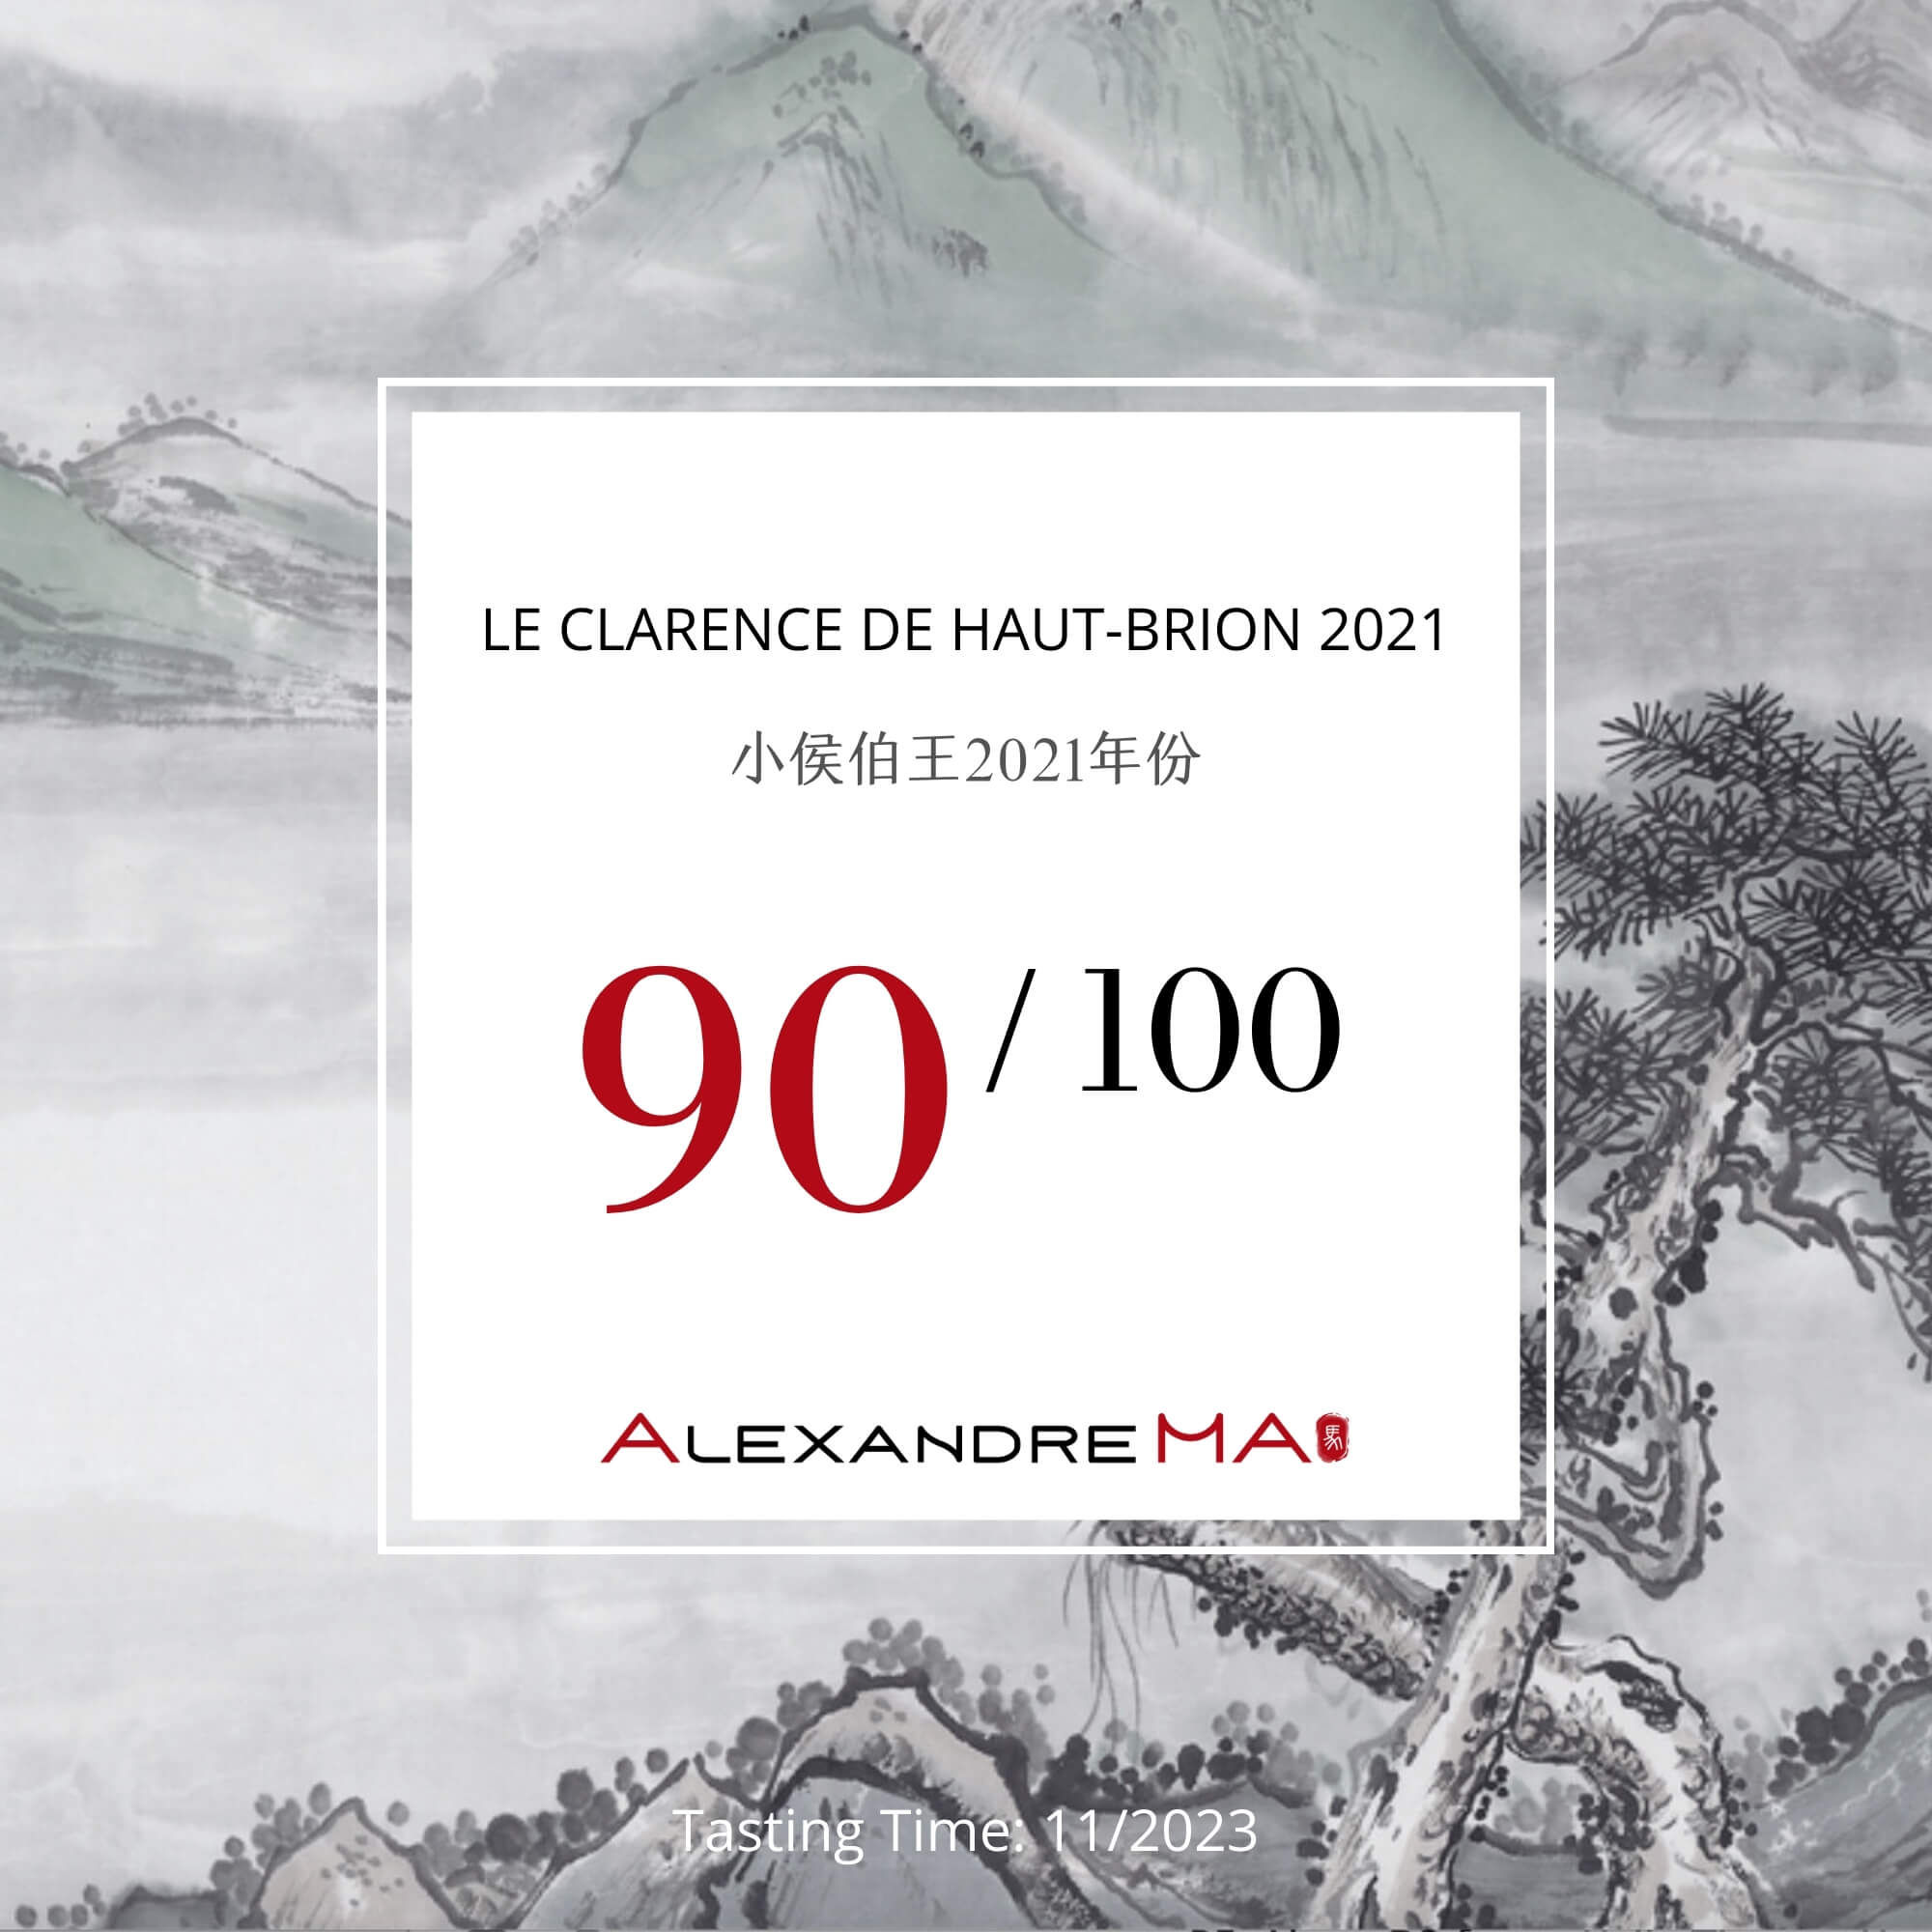 Le Clarence de Haut-Brion 2021 - Alexandre MA